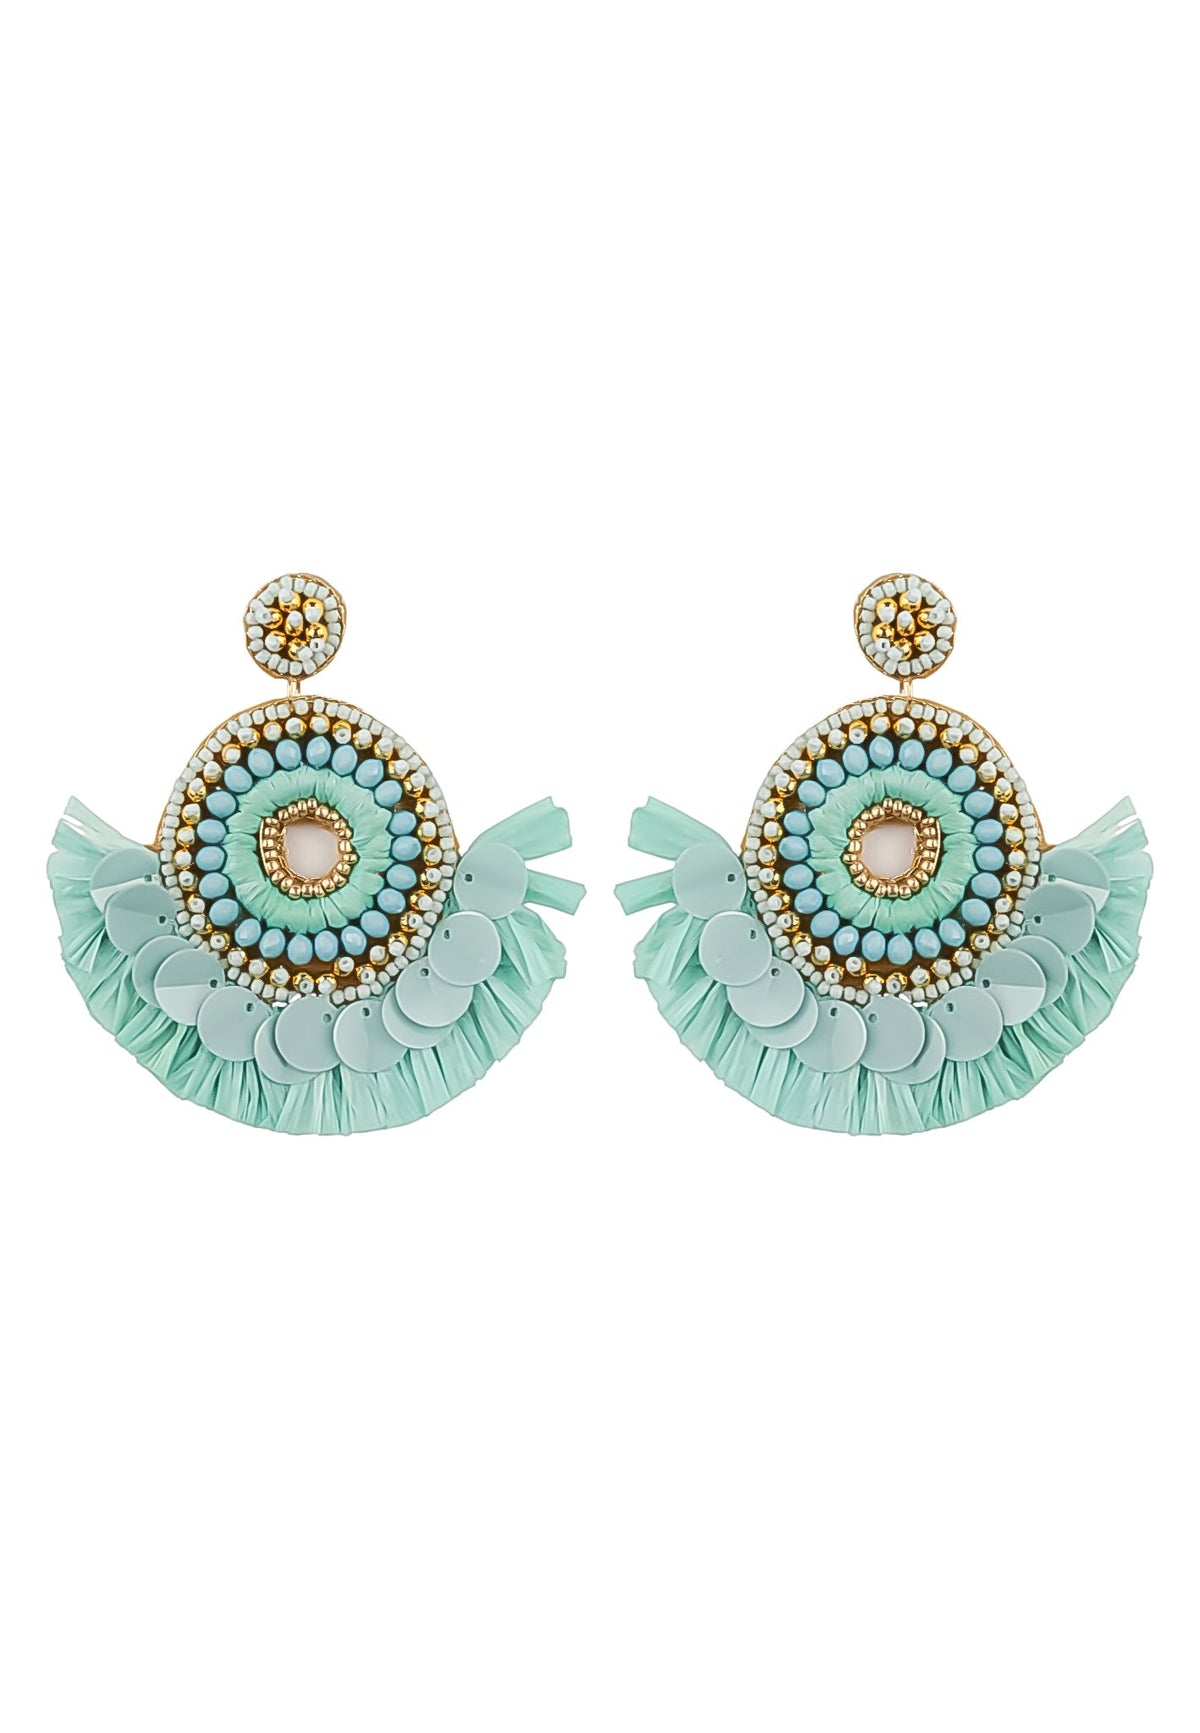 habanera turquoise earrings Bombay Sunset